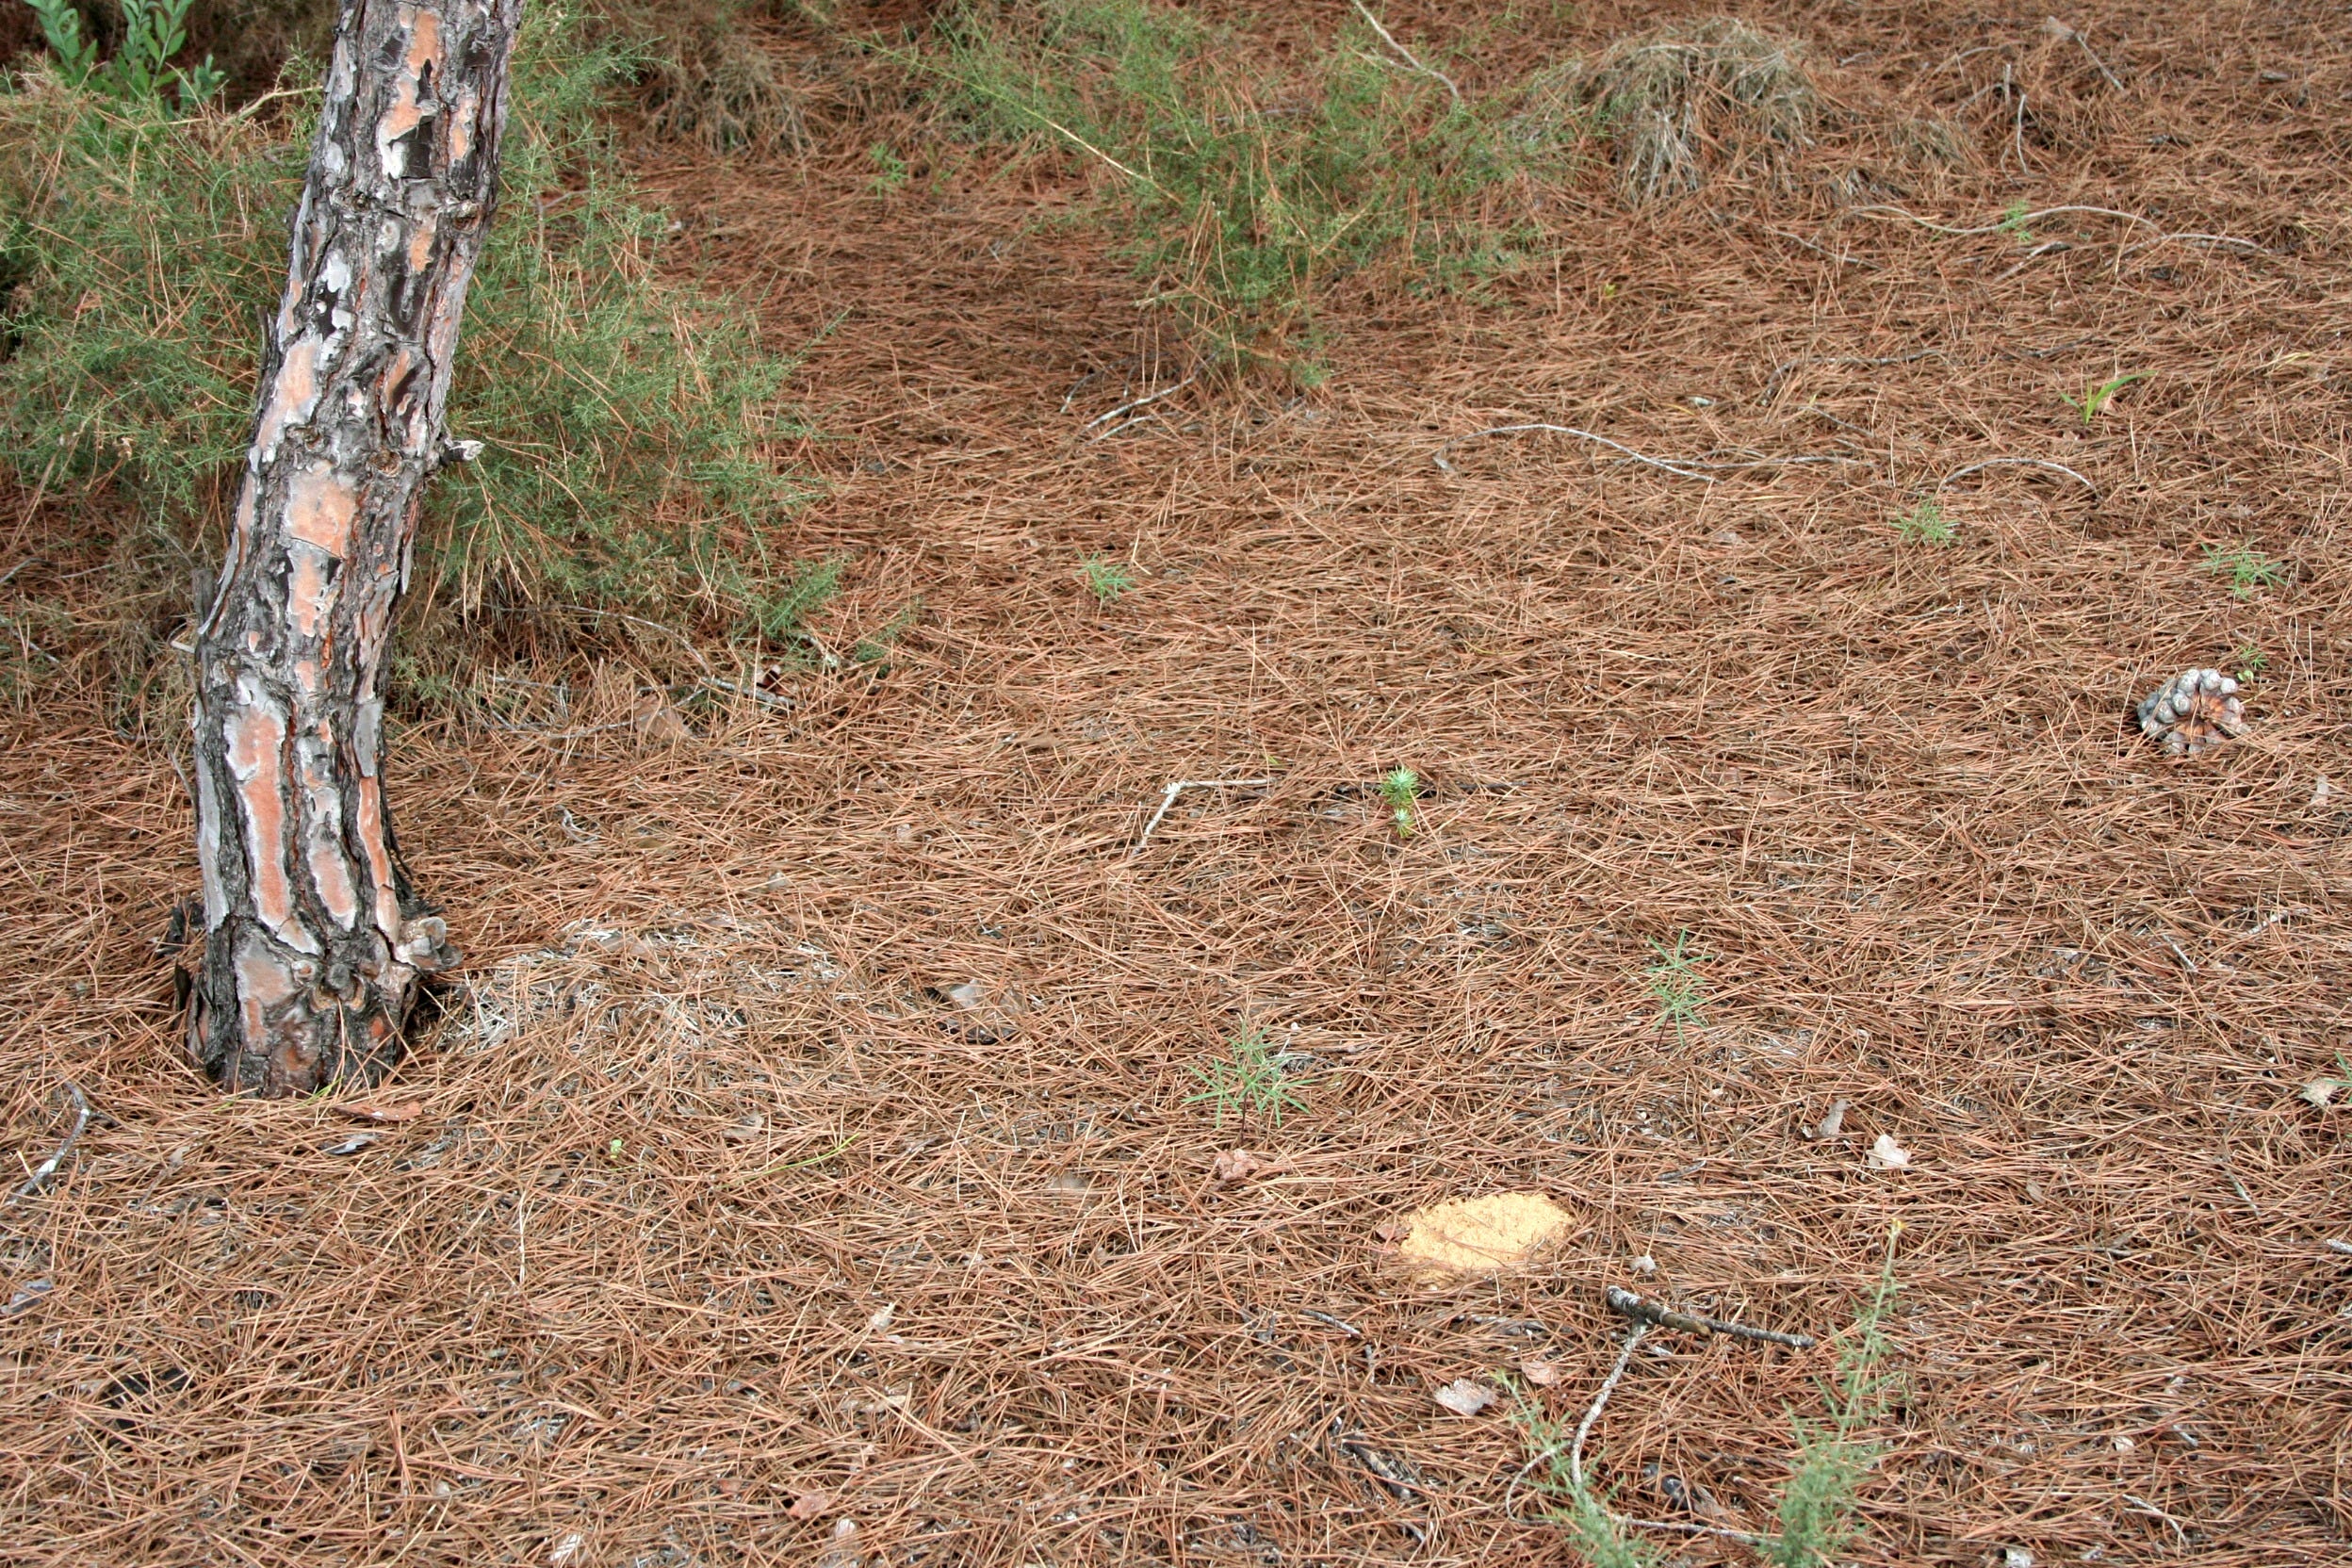 Do fallen pine needles make good mulch?